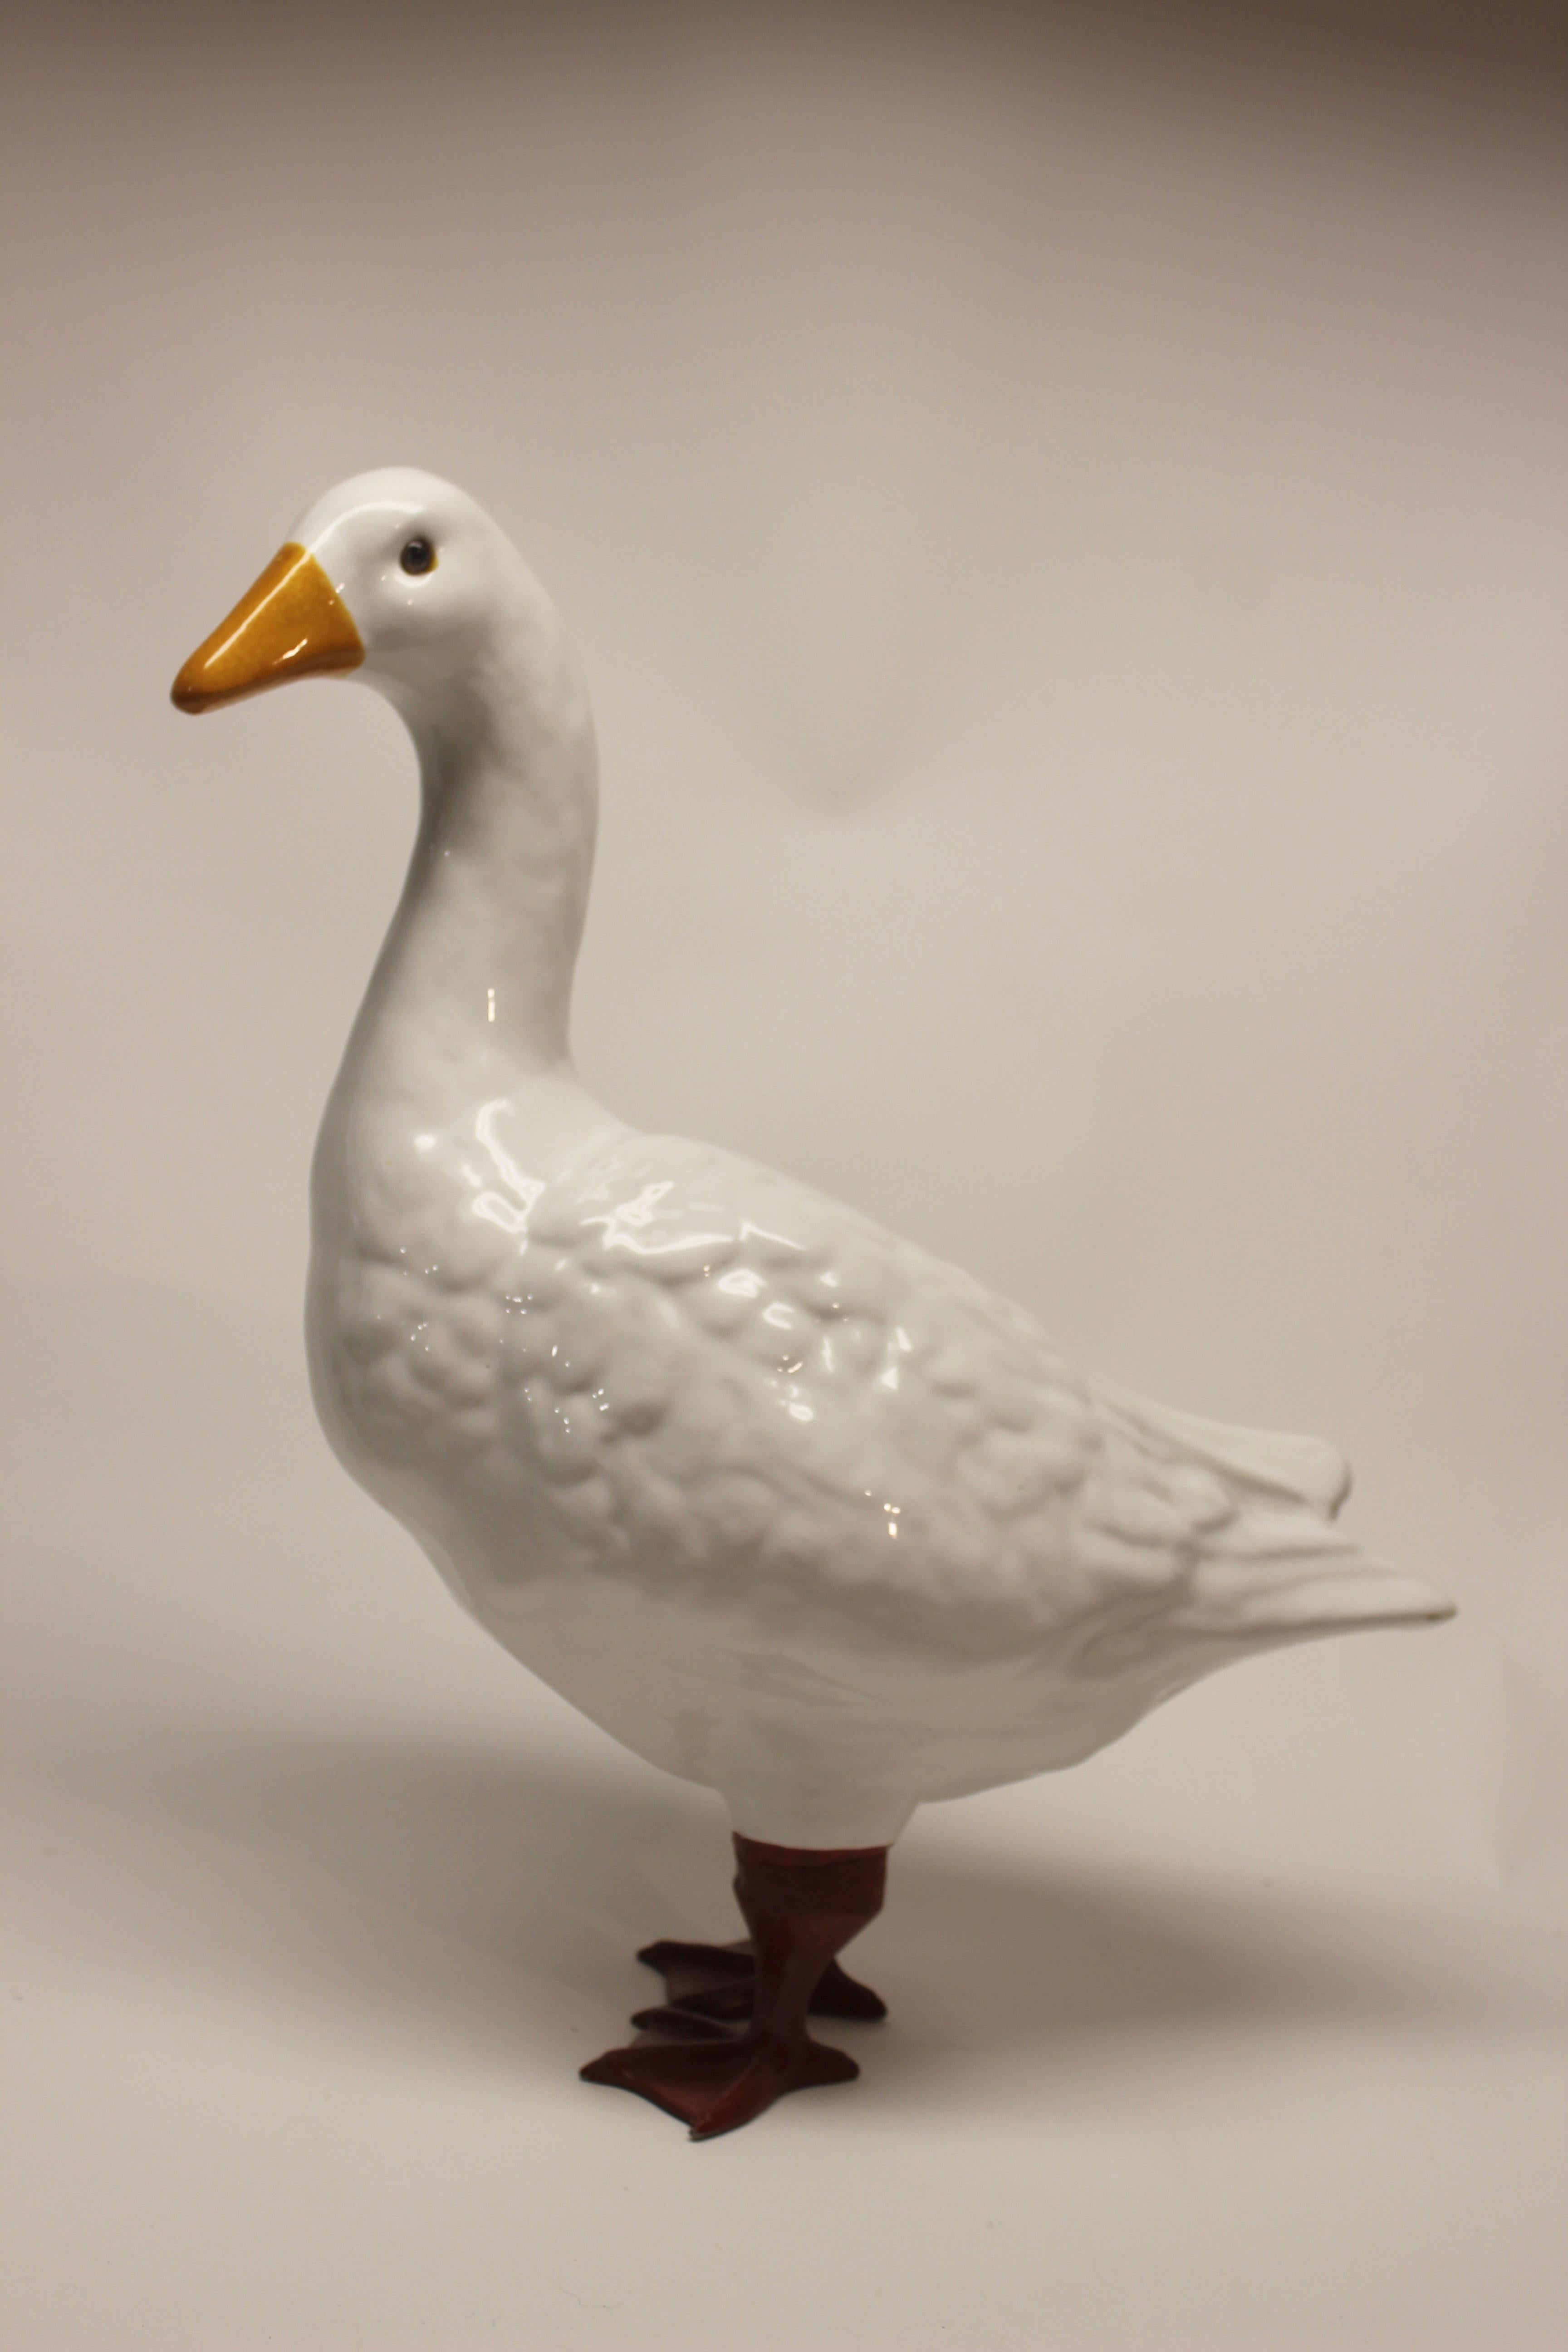 Ceramic Italian goose with metal legs.